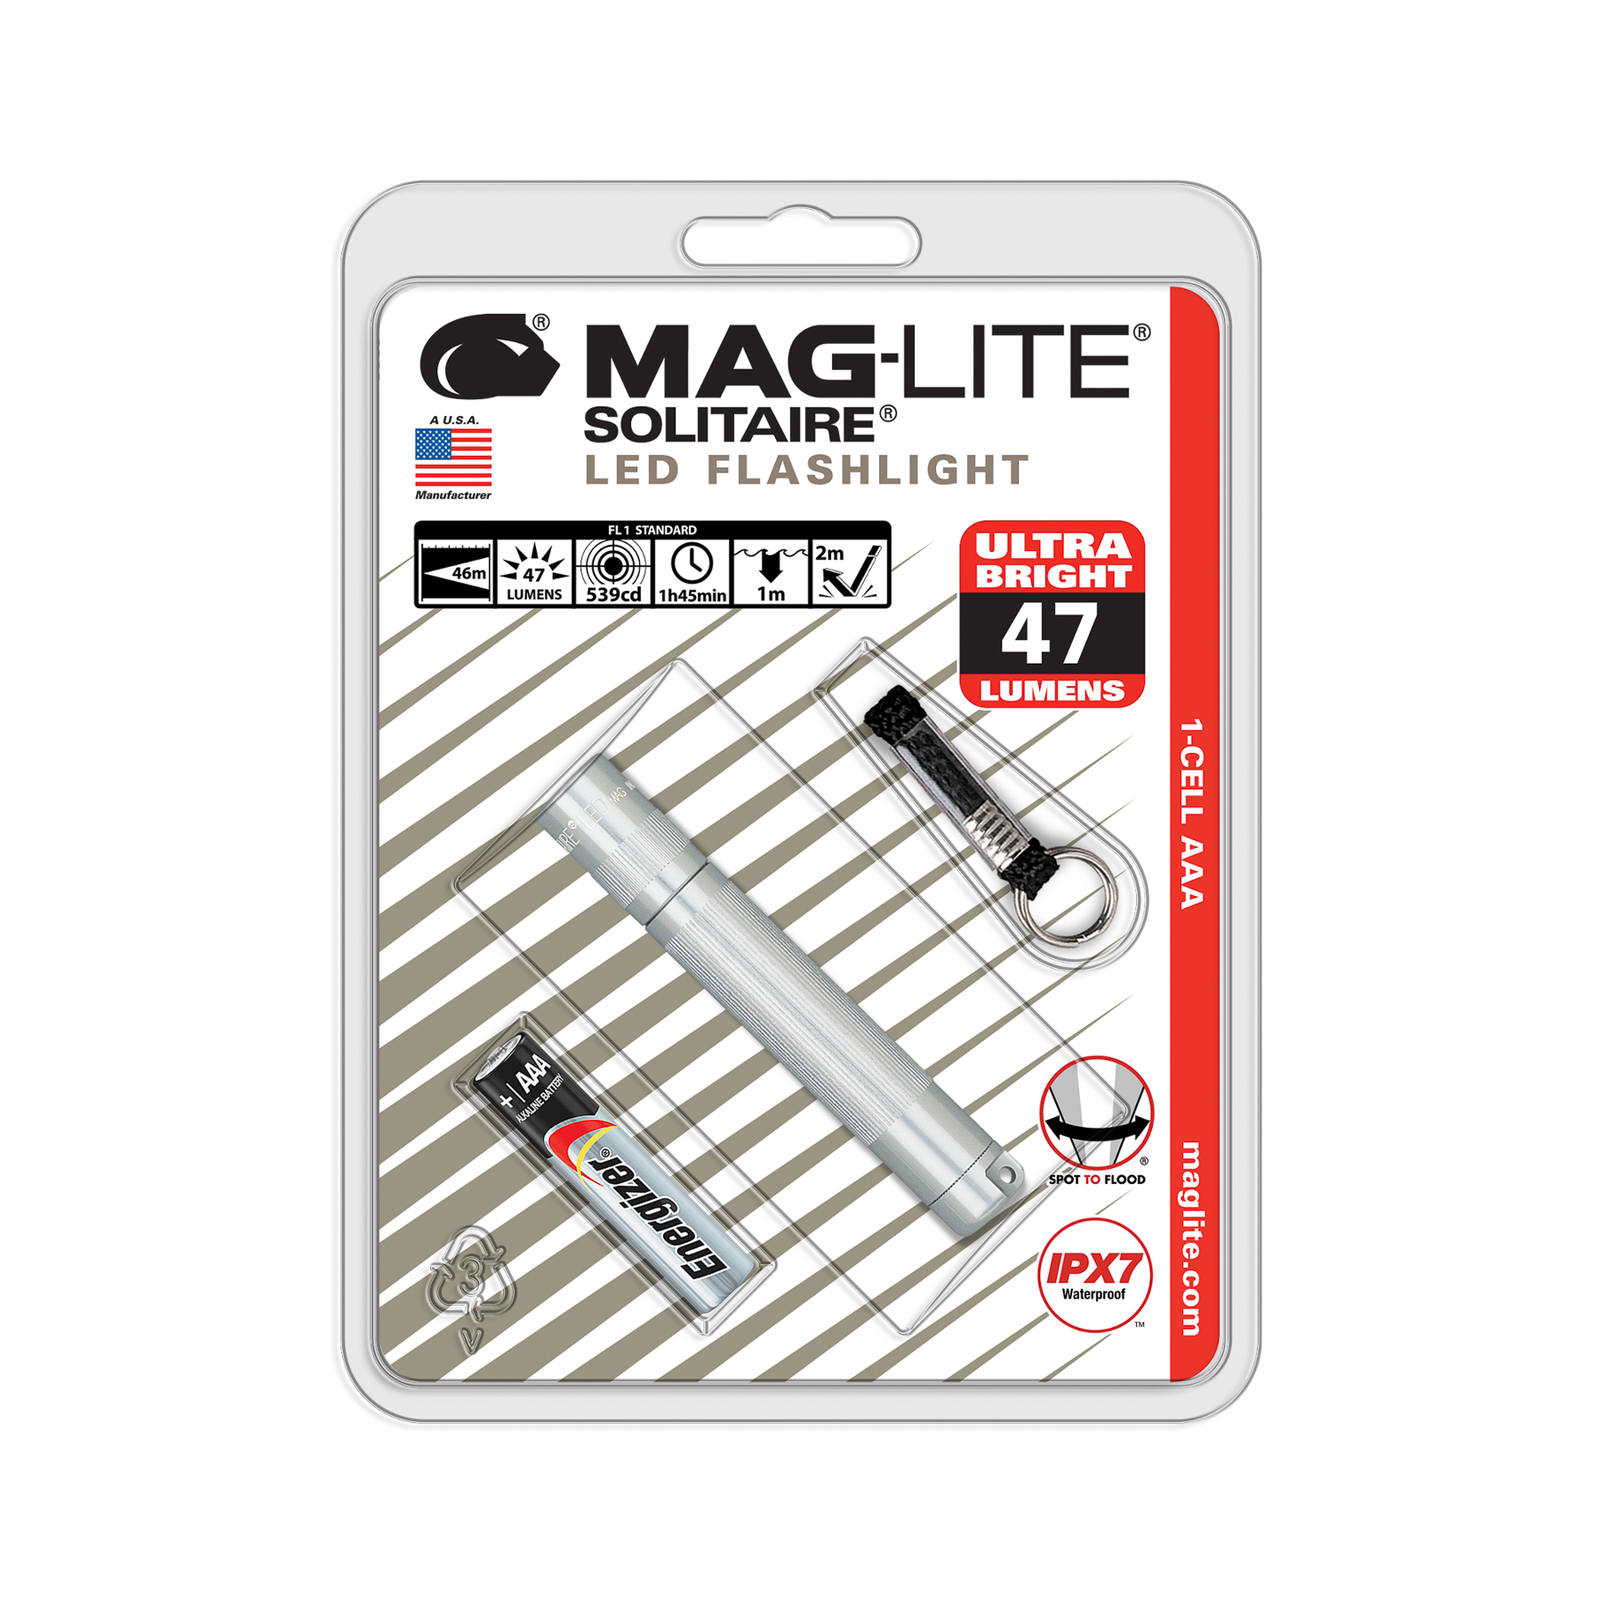 Maglite LED taskulamppu Solitaire, 1-kennoinen AAA, hopea